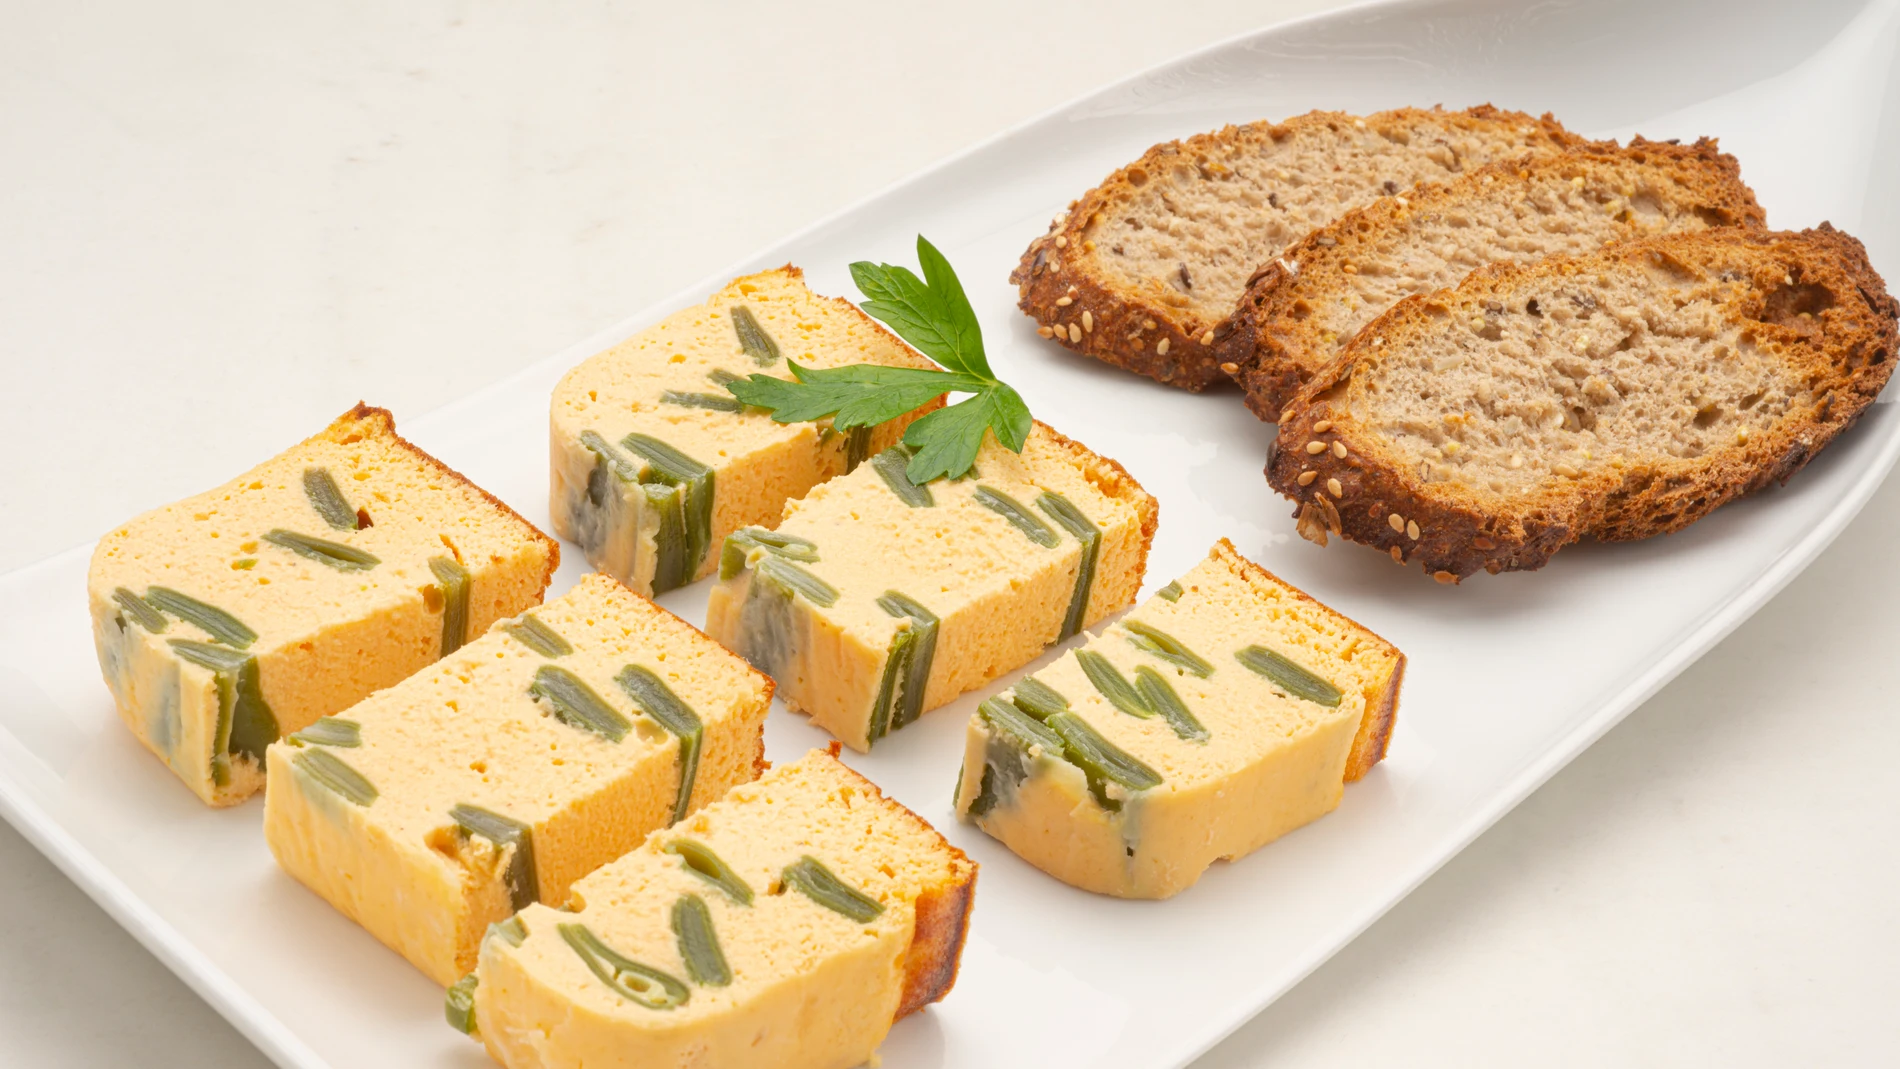 Una receta “completa y fácil de hacer”: pastel de judías verdes y salmón, de Karlos Arguiñano